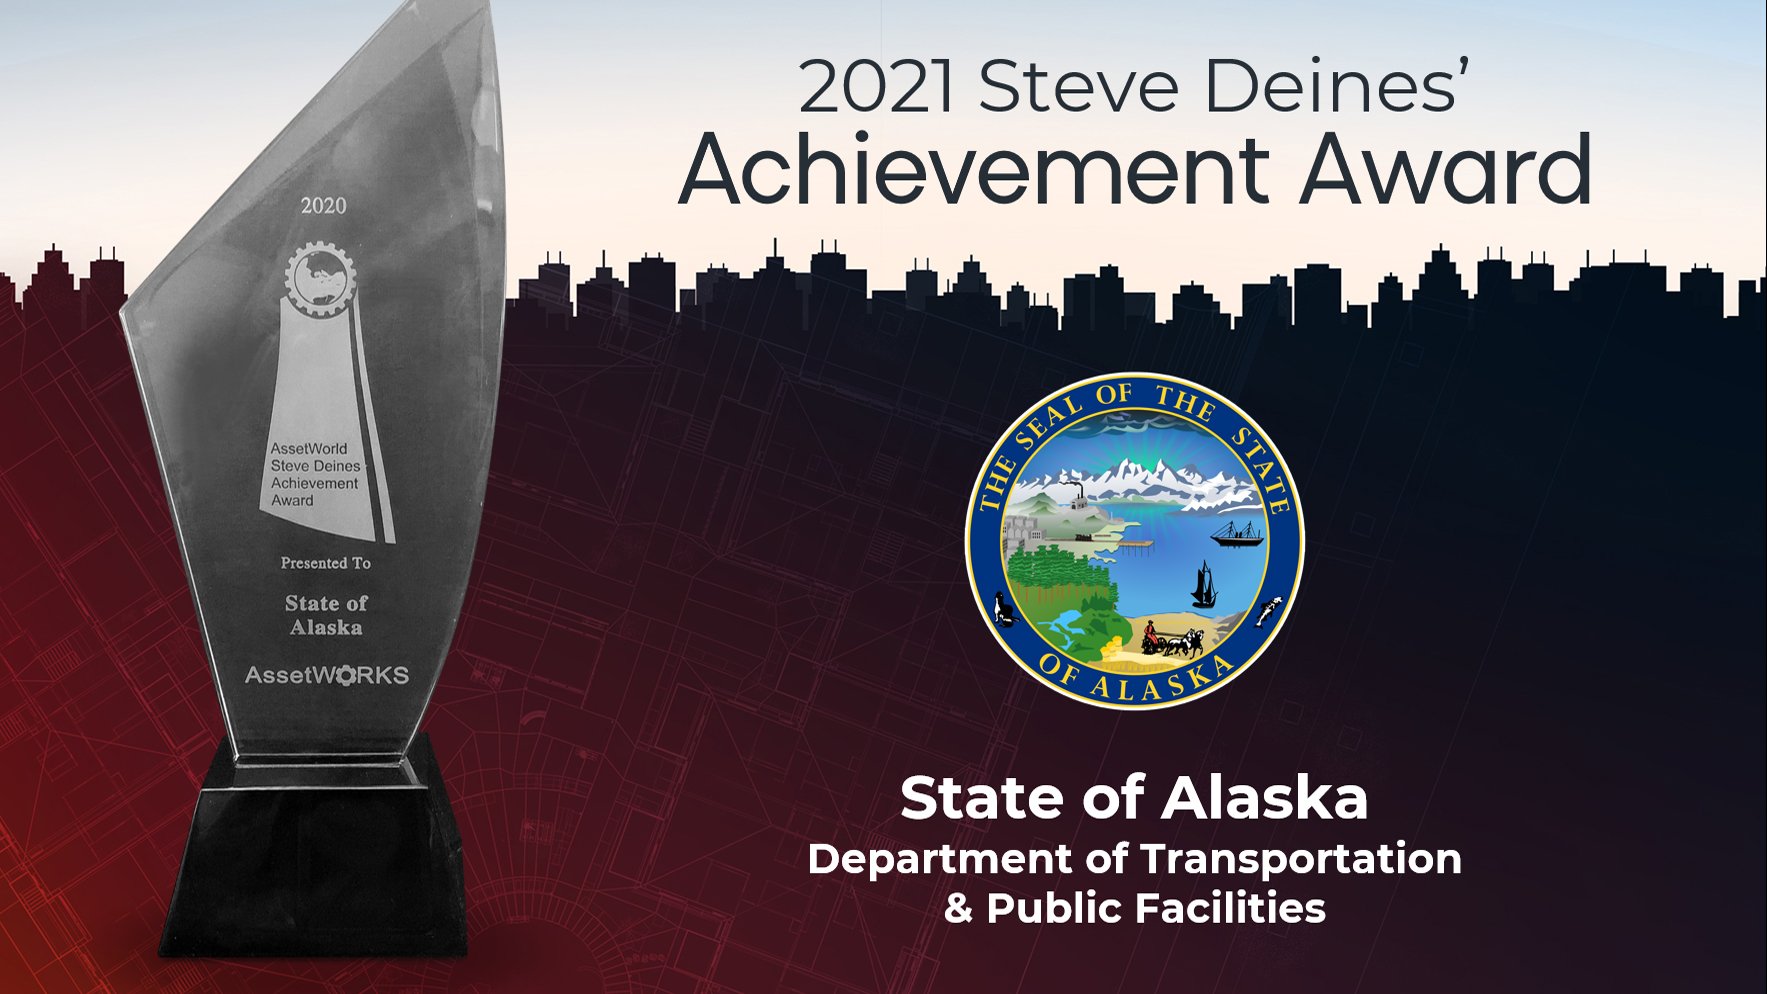 The State of Alaska wins AssetWorld's 2021 Steve Deines' Achievement Award